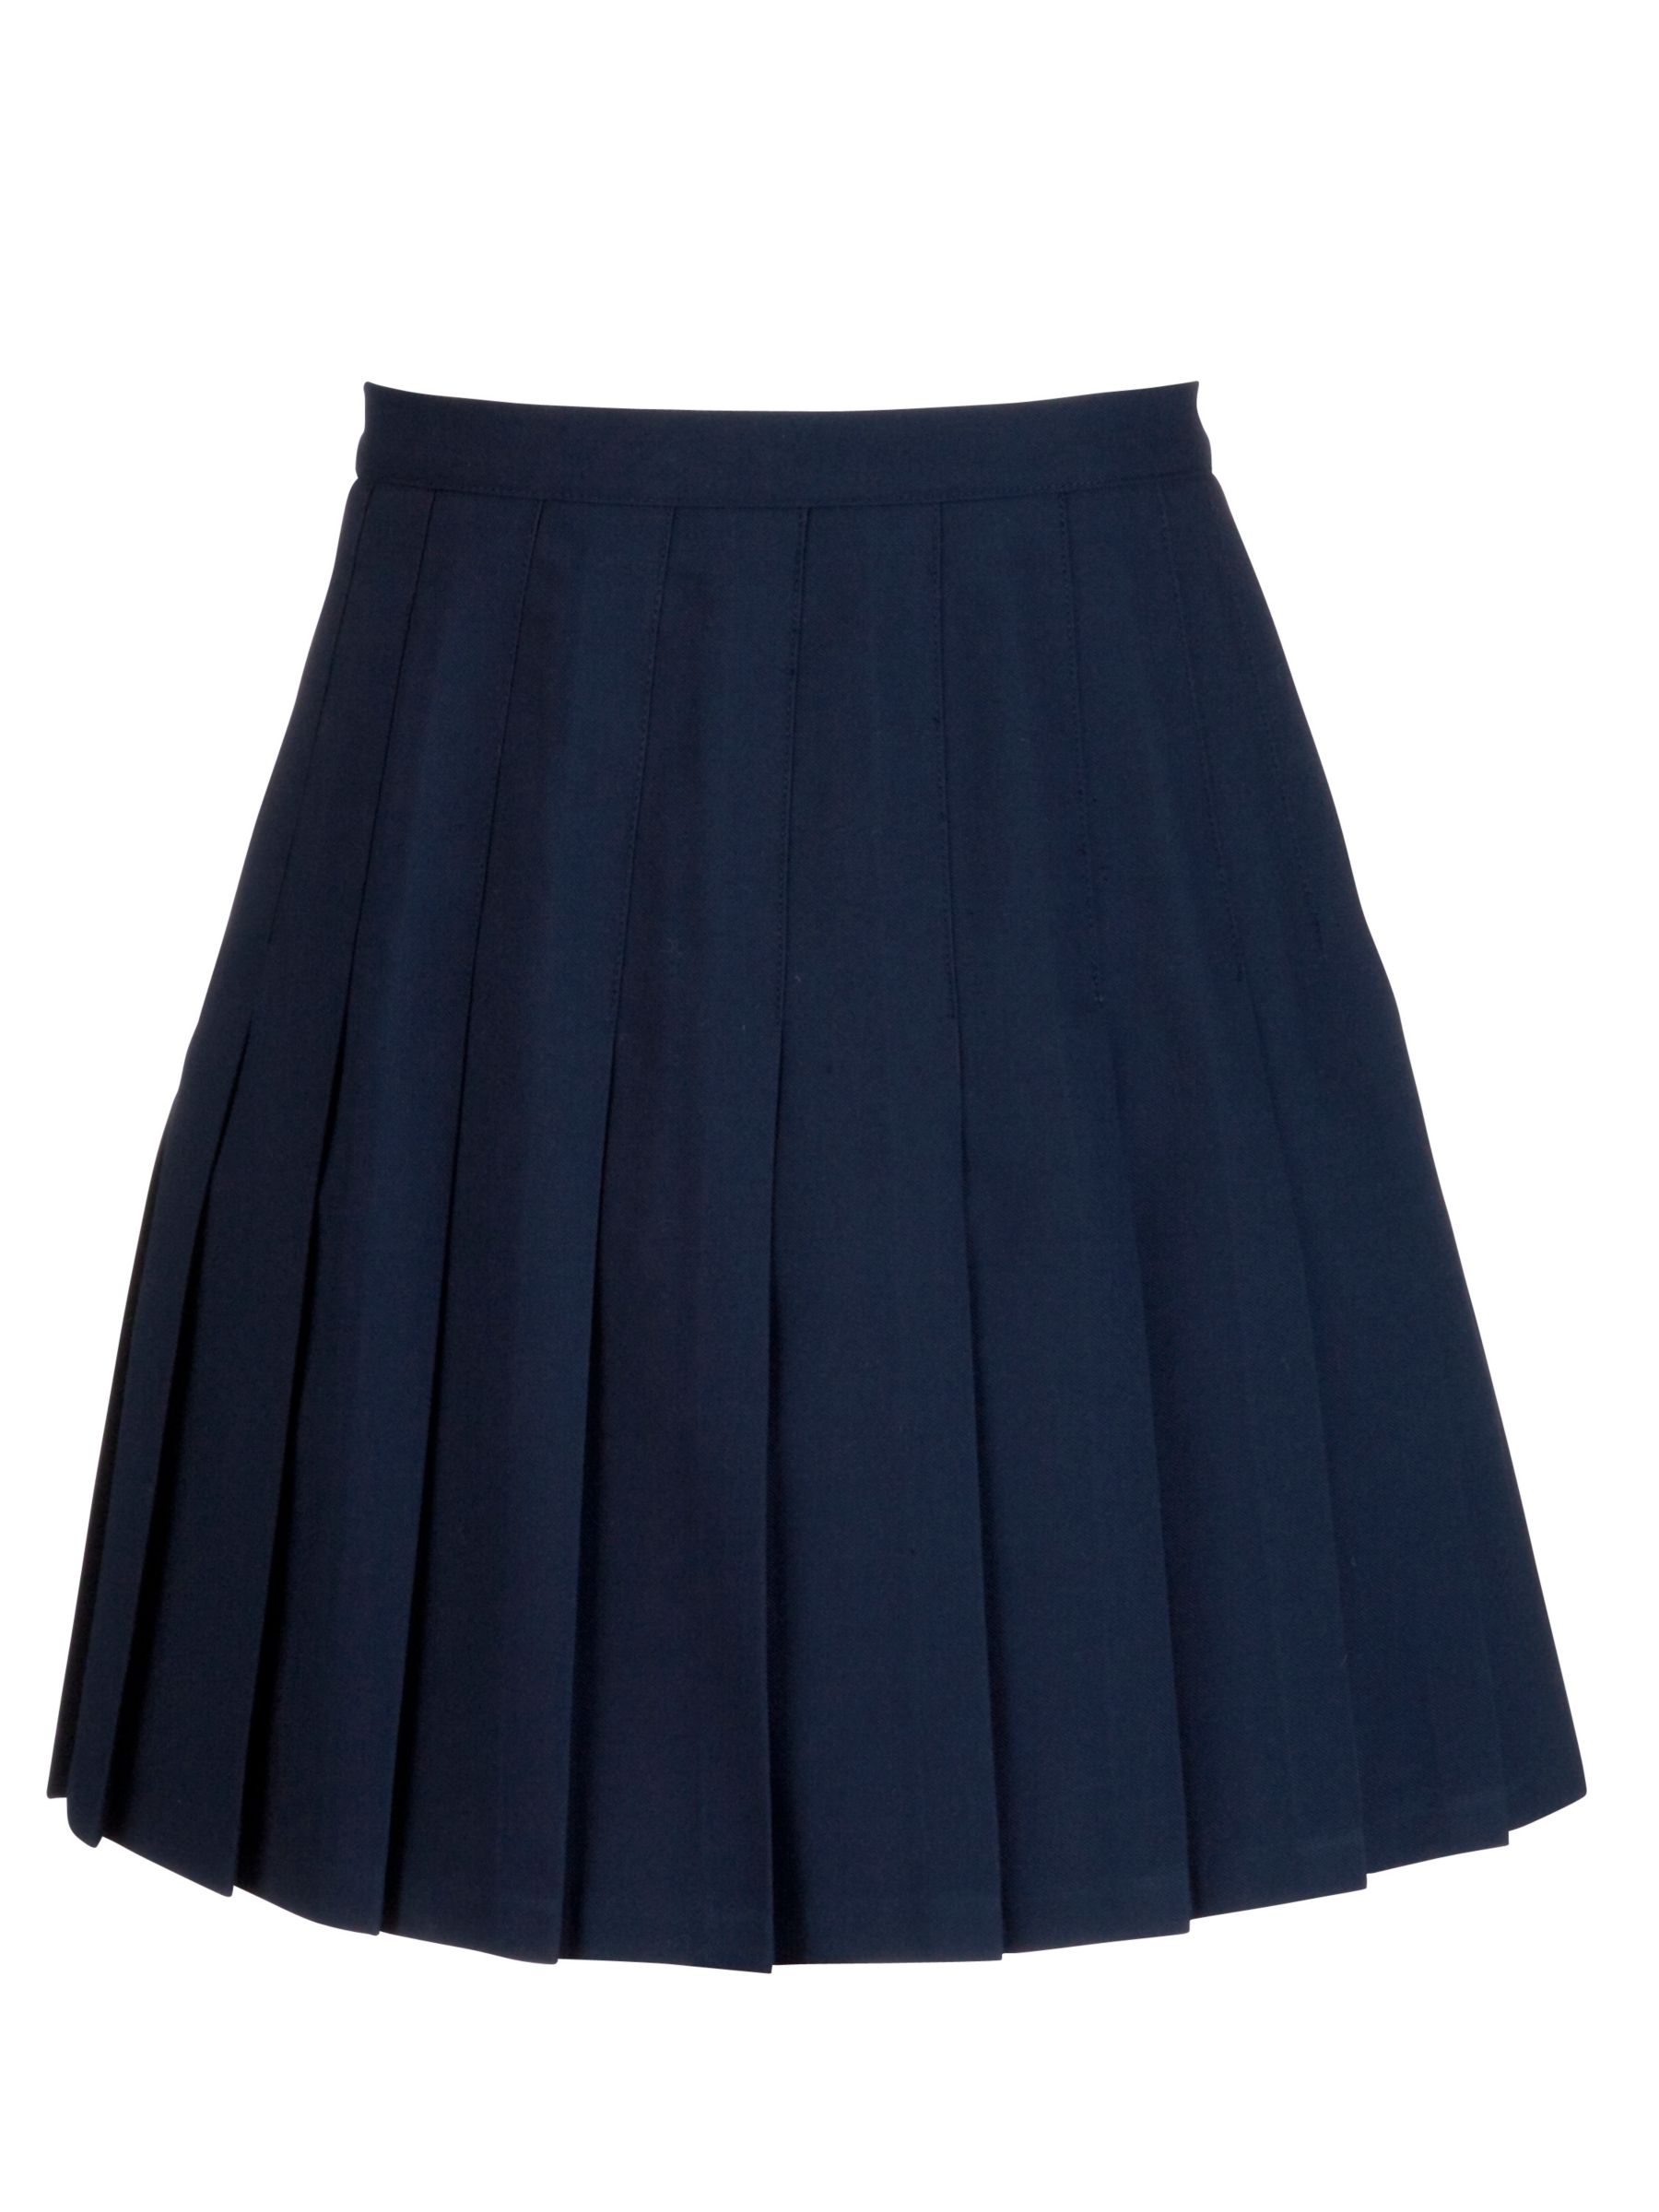 School Girls' Knife Pleat Skirt, Navy ...